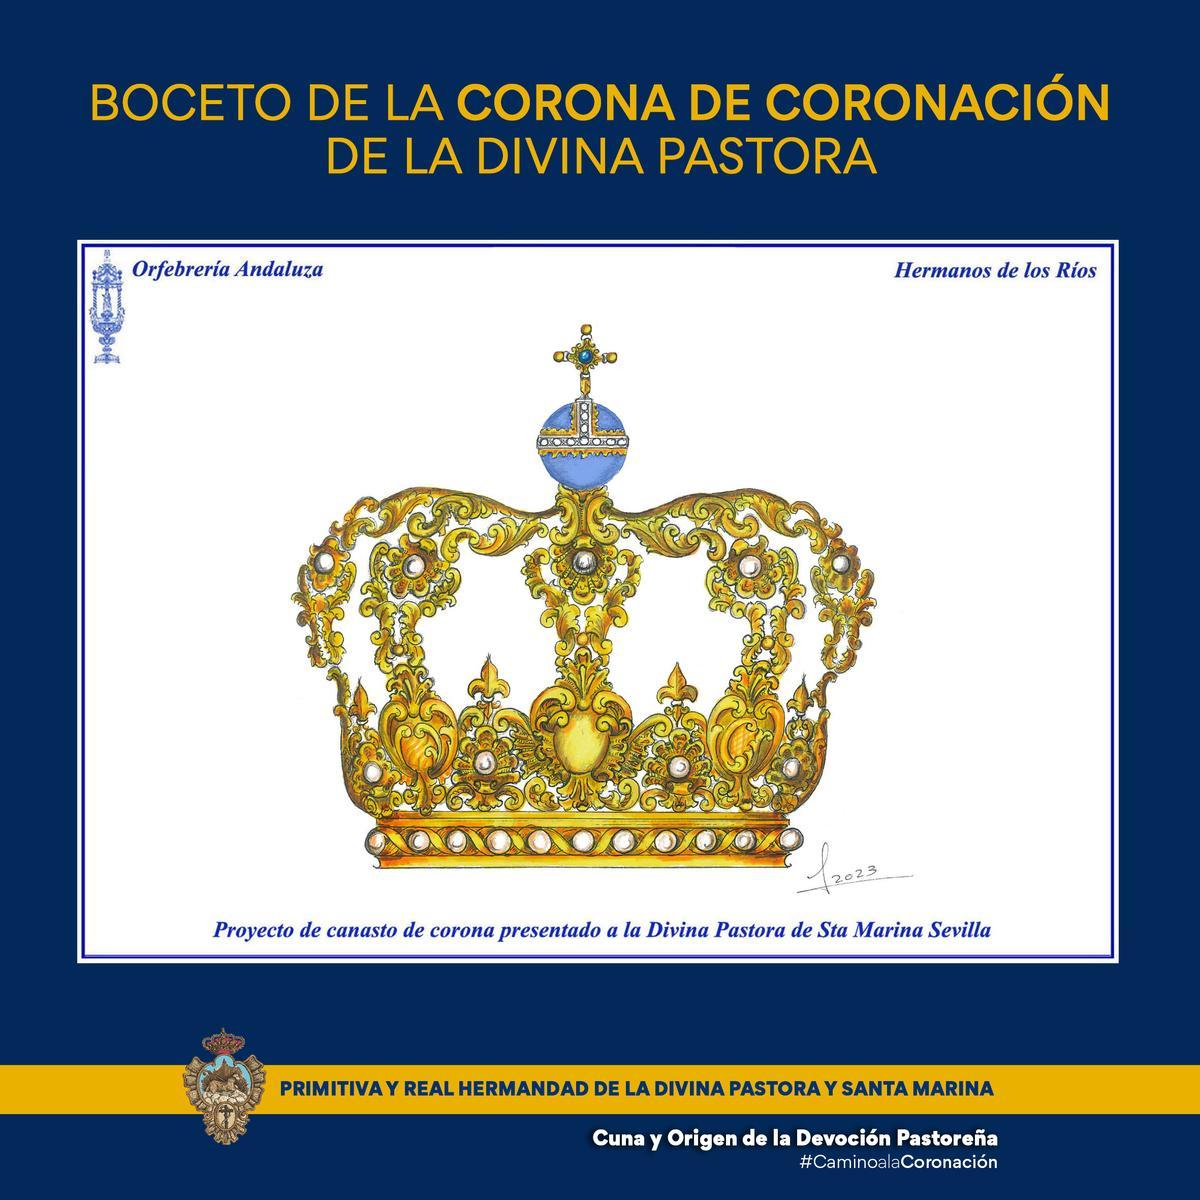 Corona de la Divina Pastora de Santa Marina